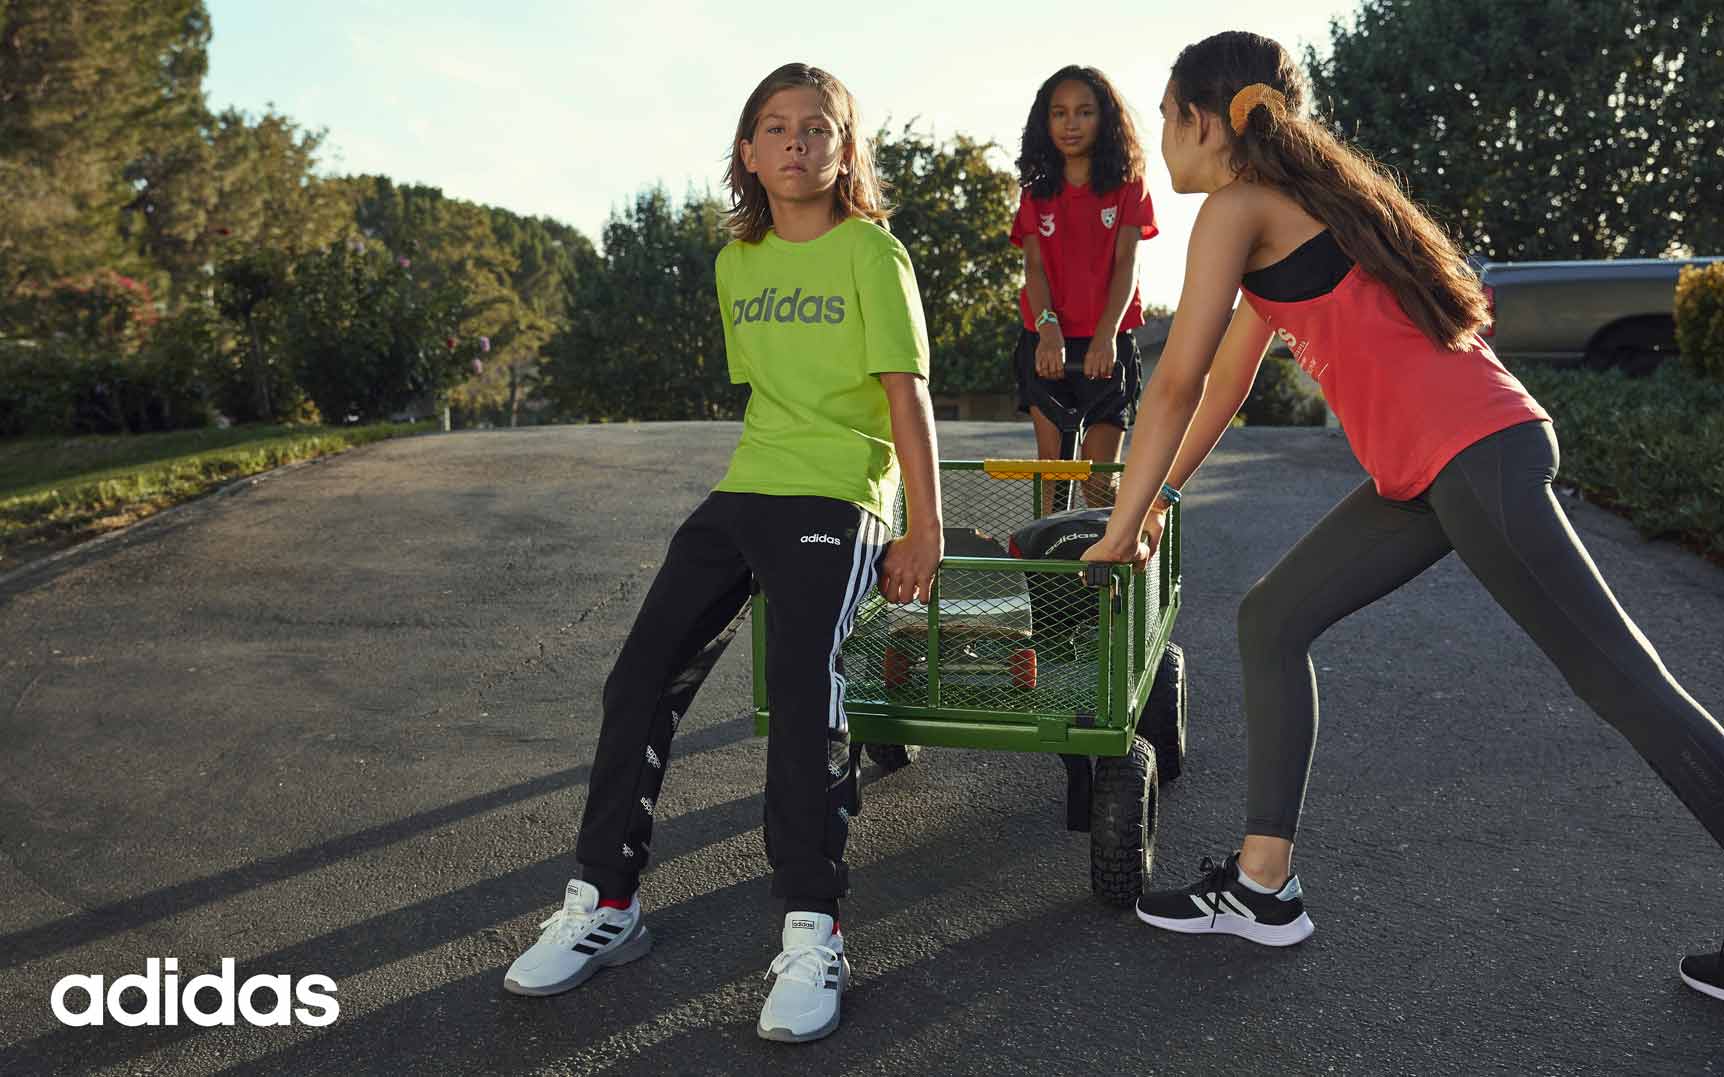 Kinder mit Adidas Sportbekleidung und Adidas Sneaker in weiß und schwarz